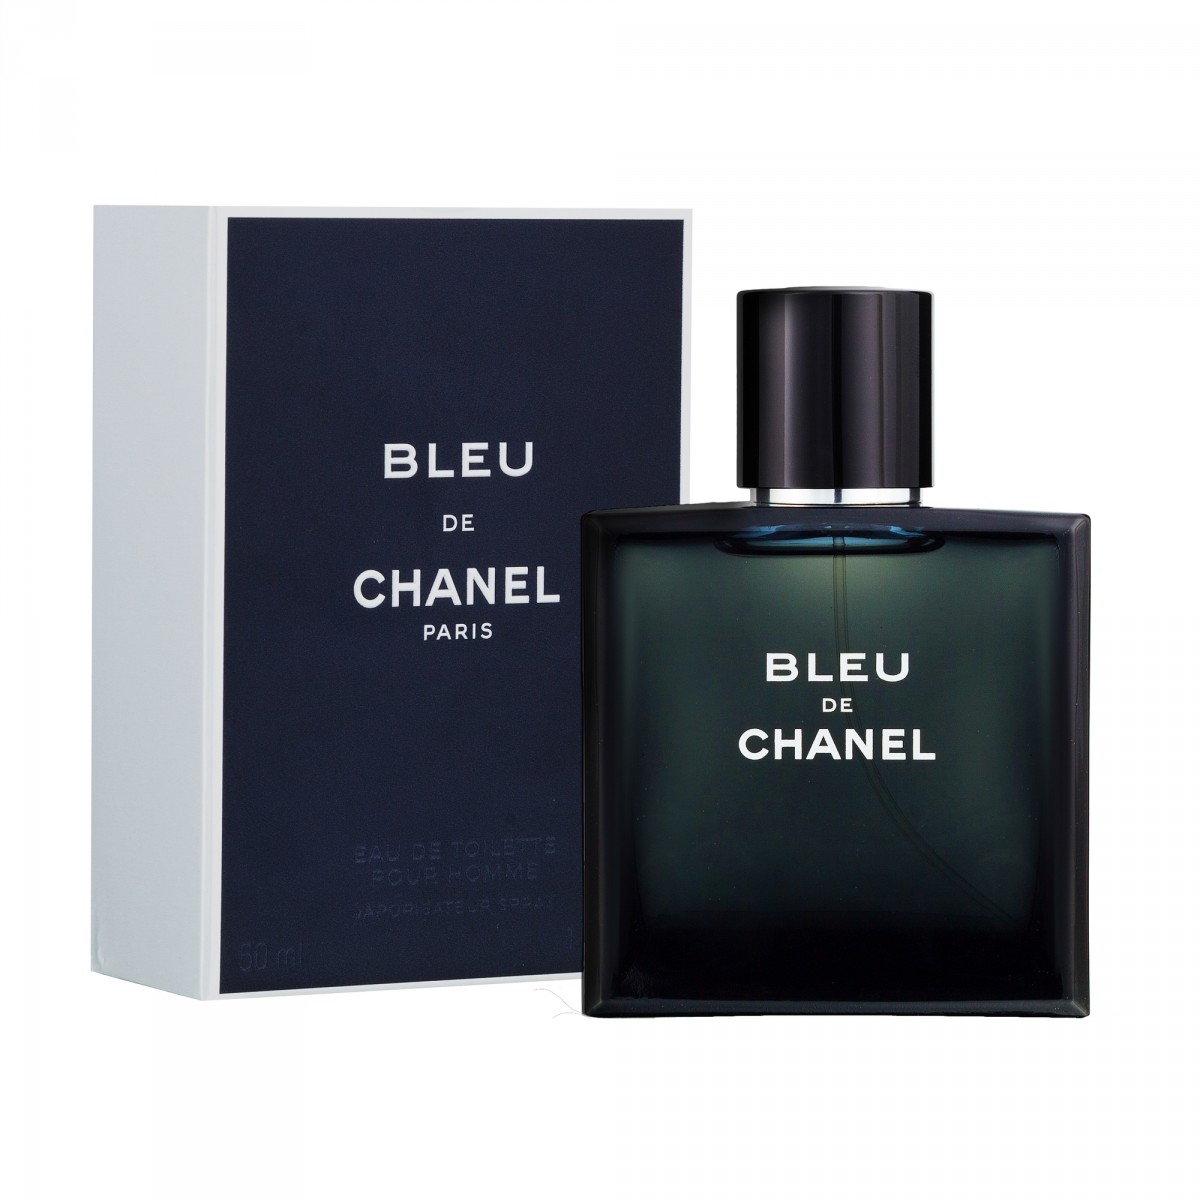 bleu de chanel parfum cologne for men